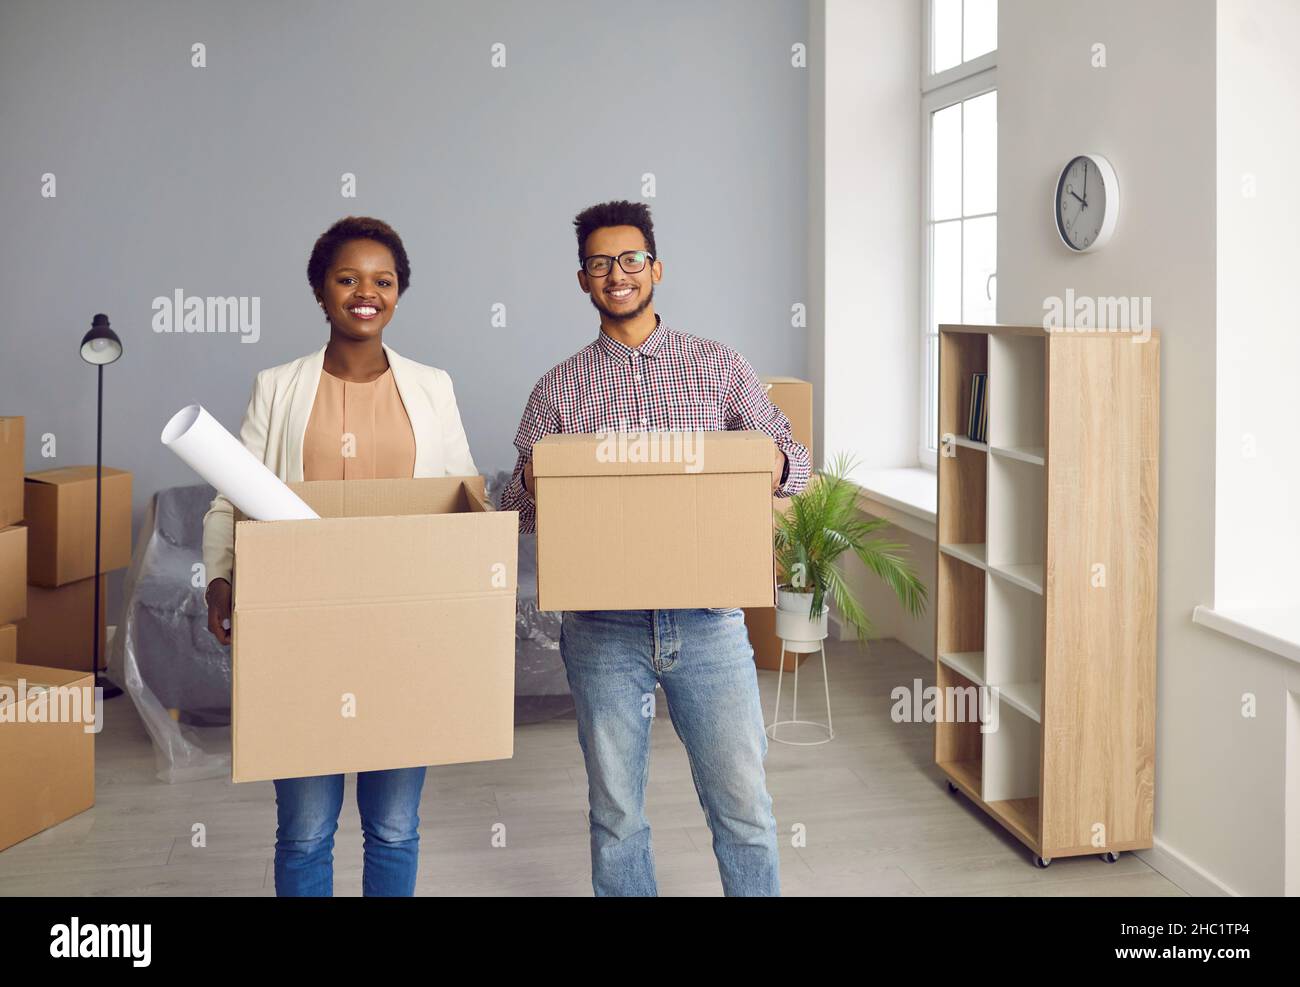 Glückliches, lächelndes junges Paar, das in ein neues Haus zieht und Kartons zusammen trägt Stockfoto